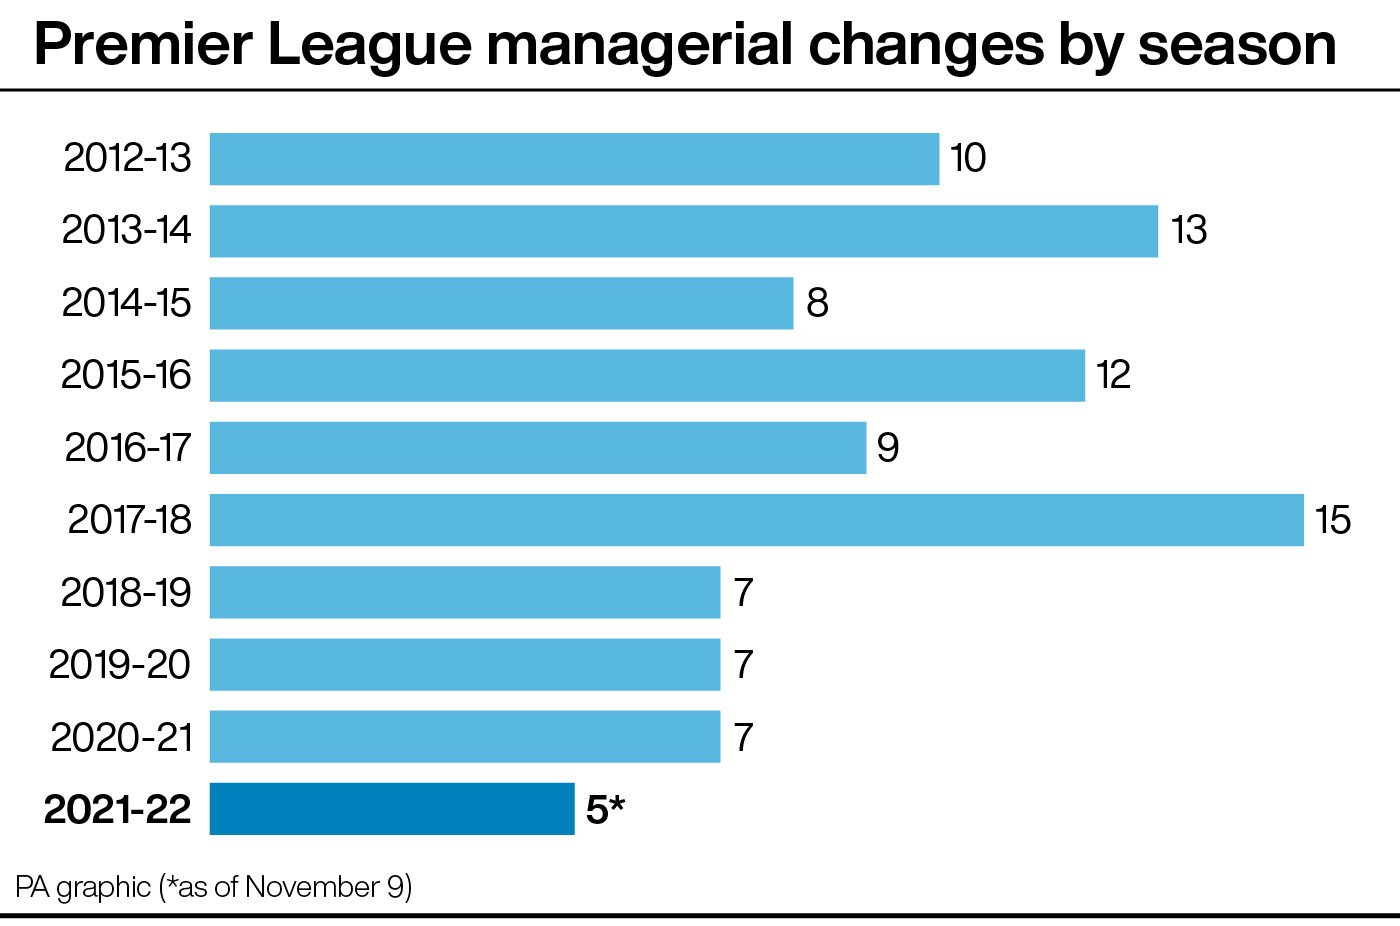 Premier League managerial departures by season